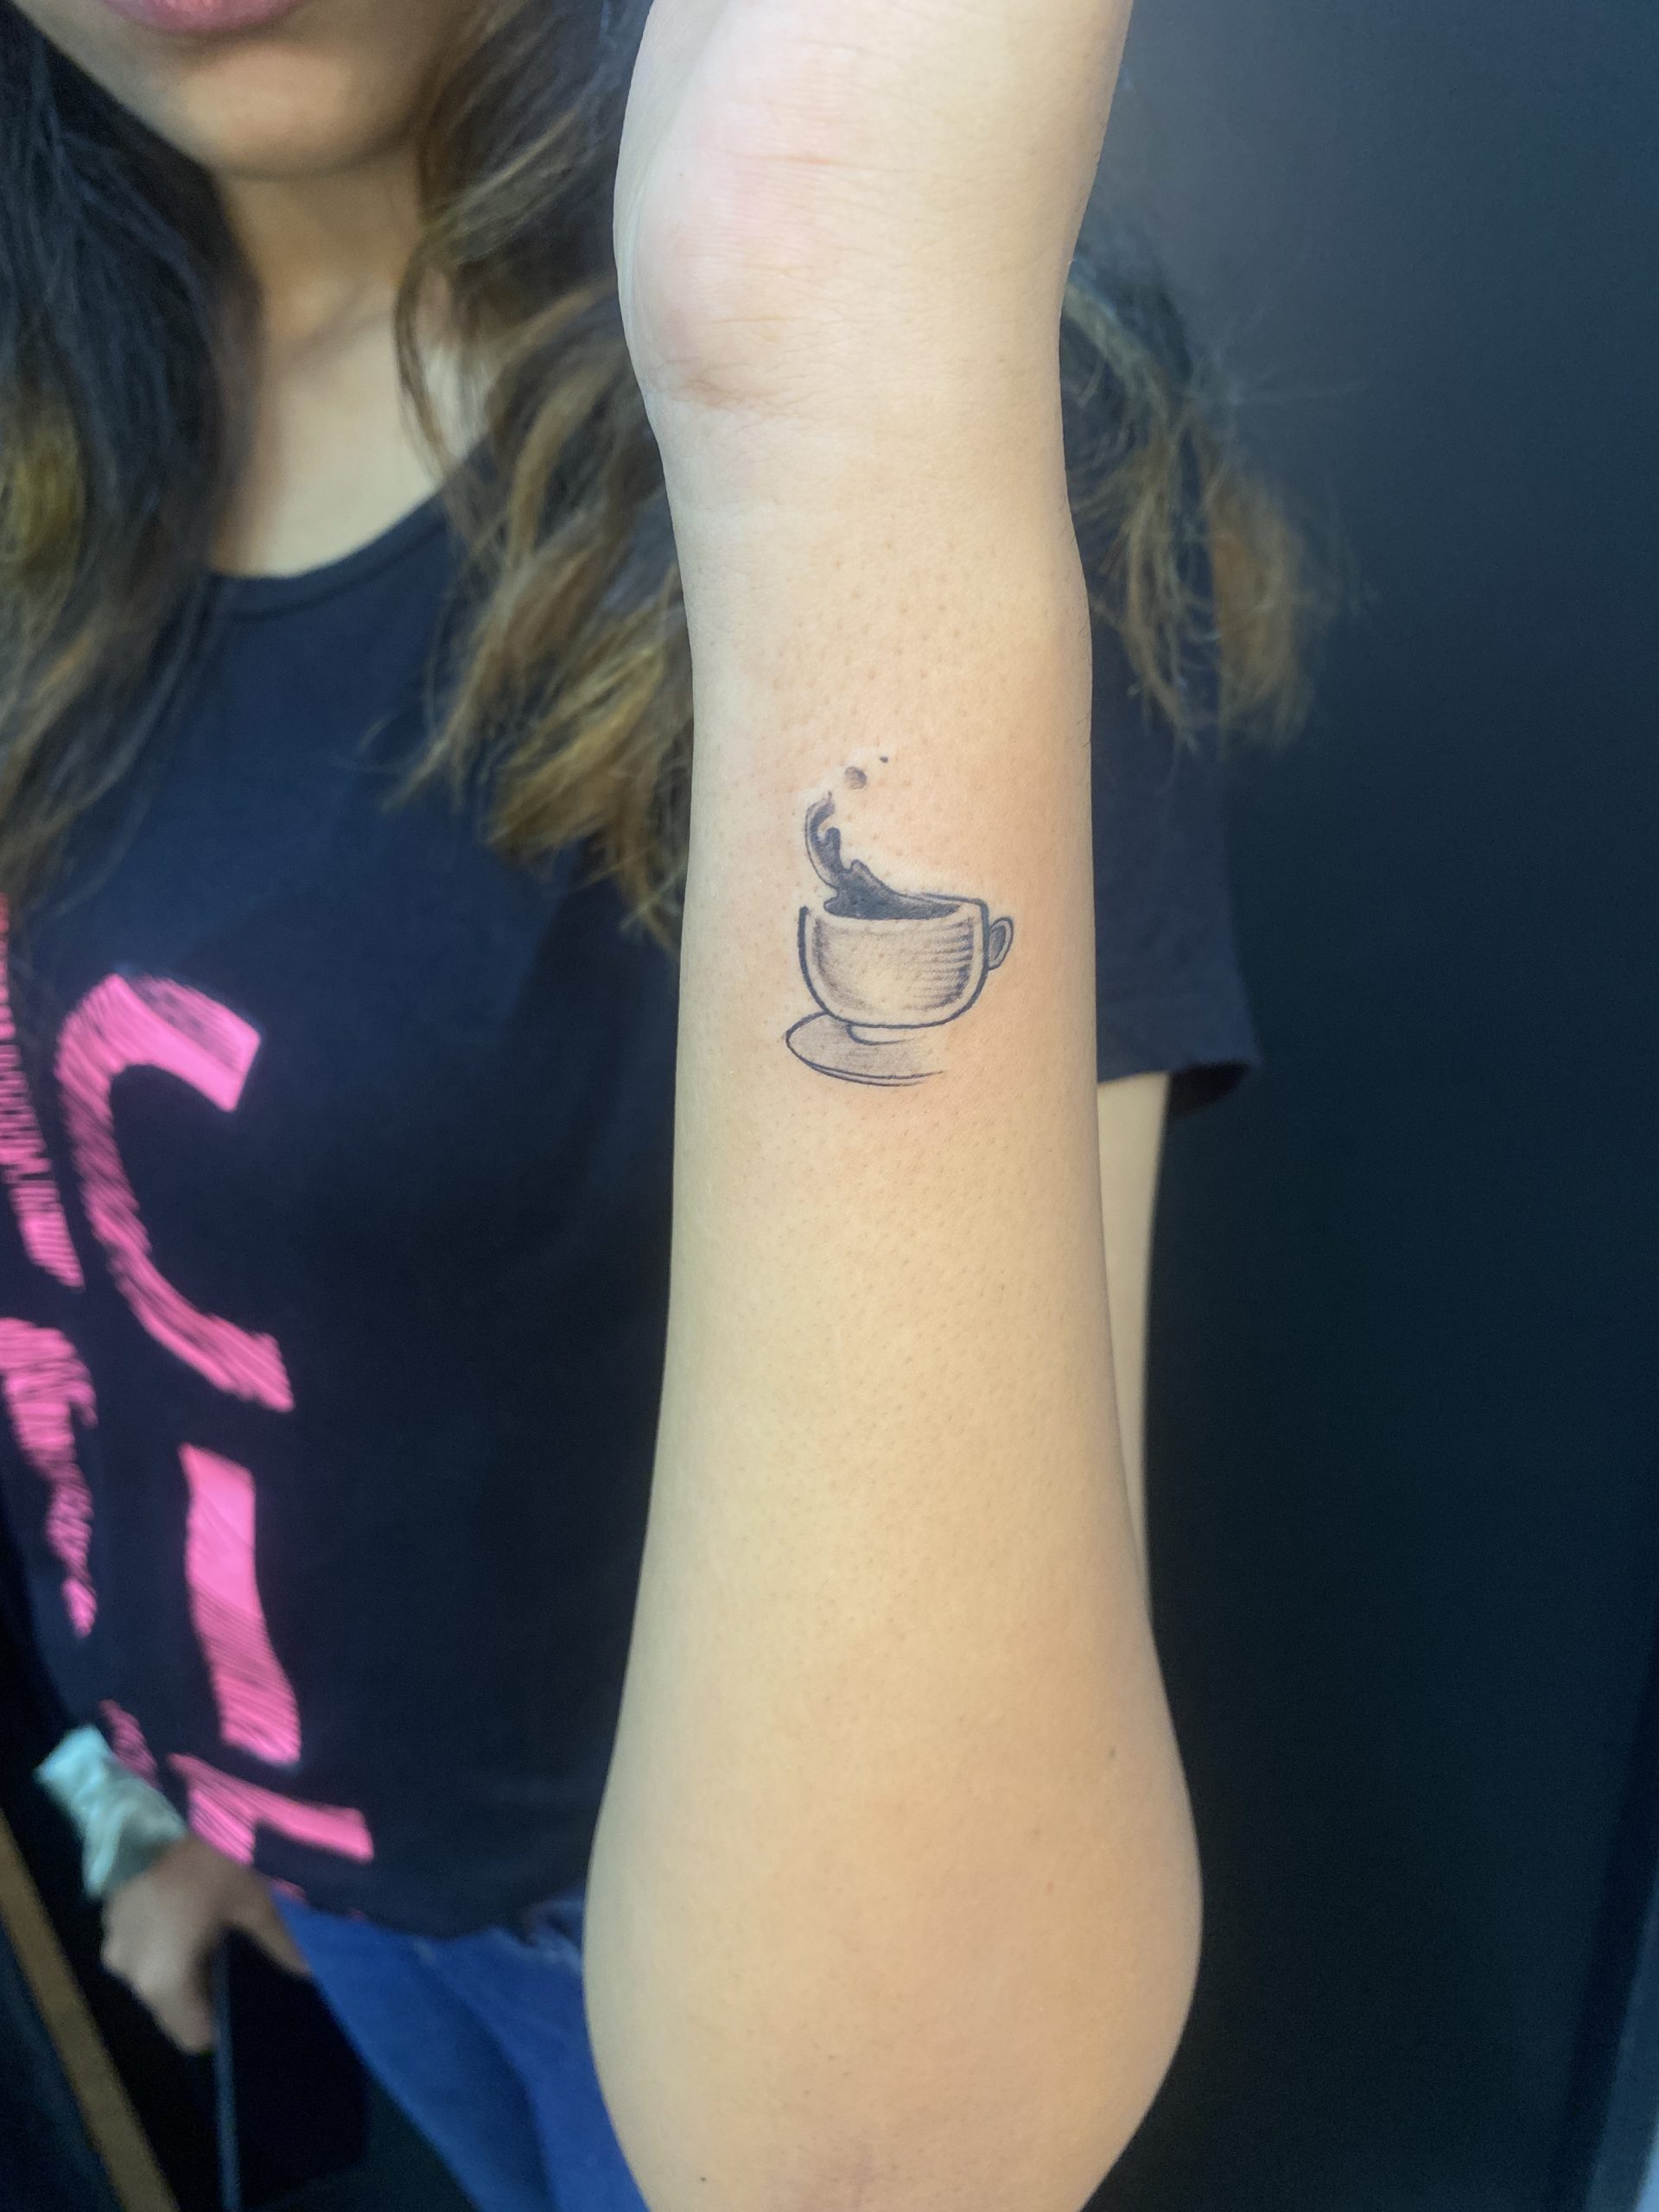 Small Shaka Sign Temporary Tattoo (Set of 3) – Small Tattoos